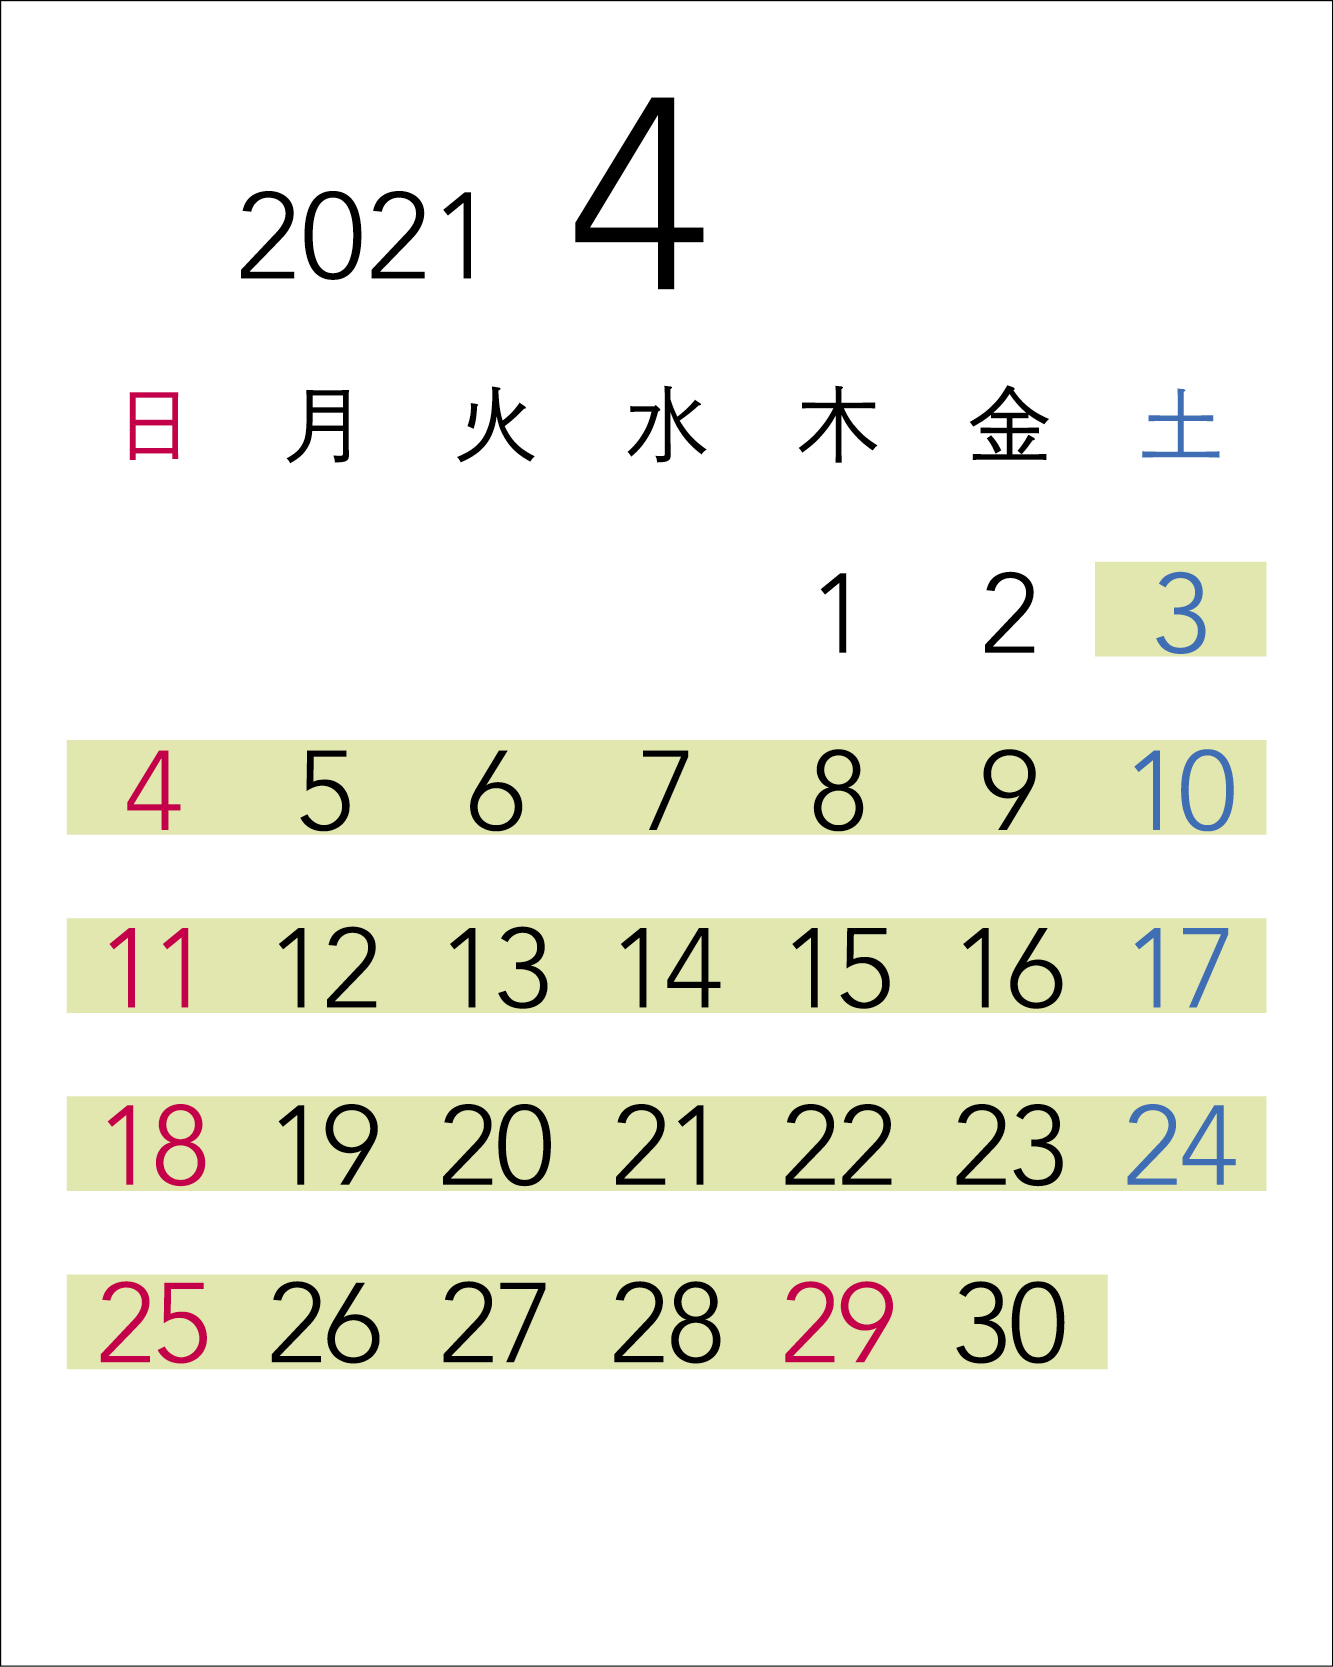 Calendar in April